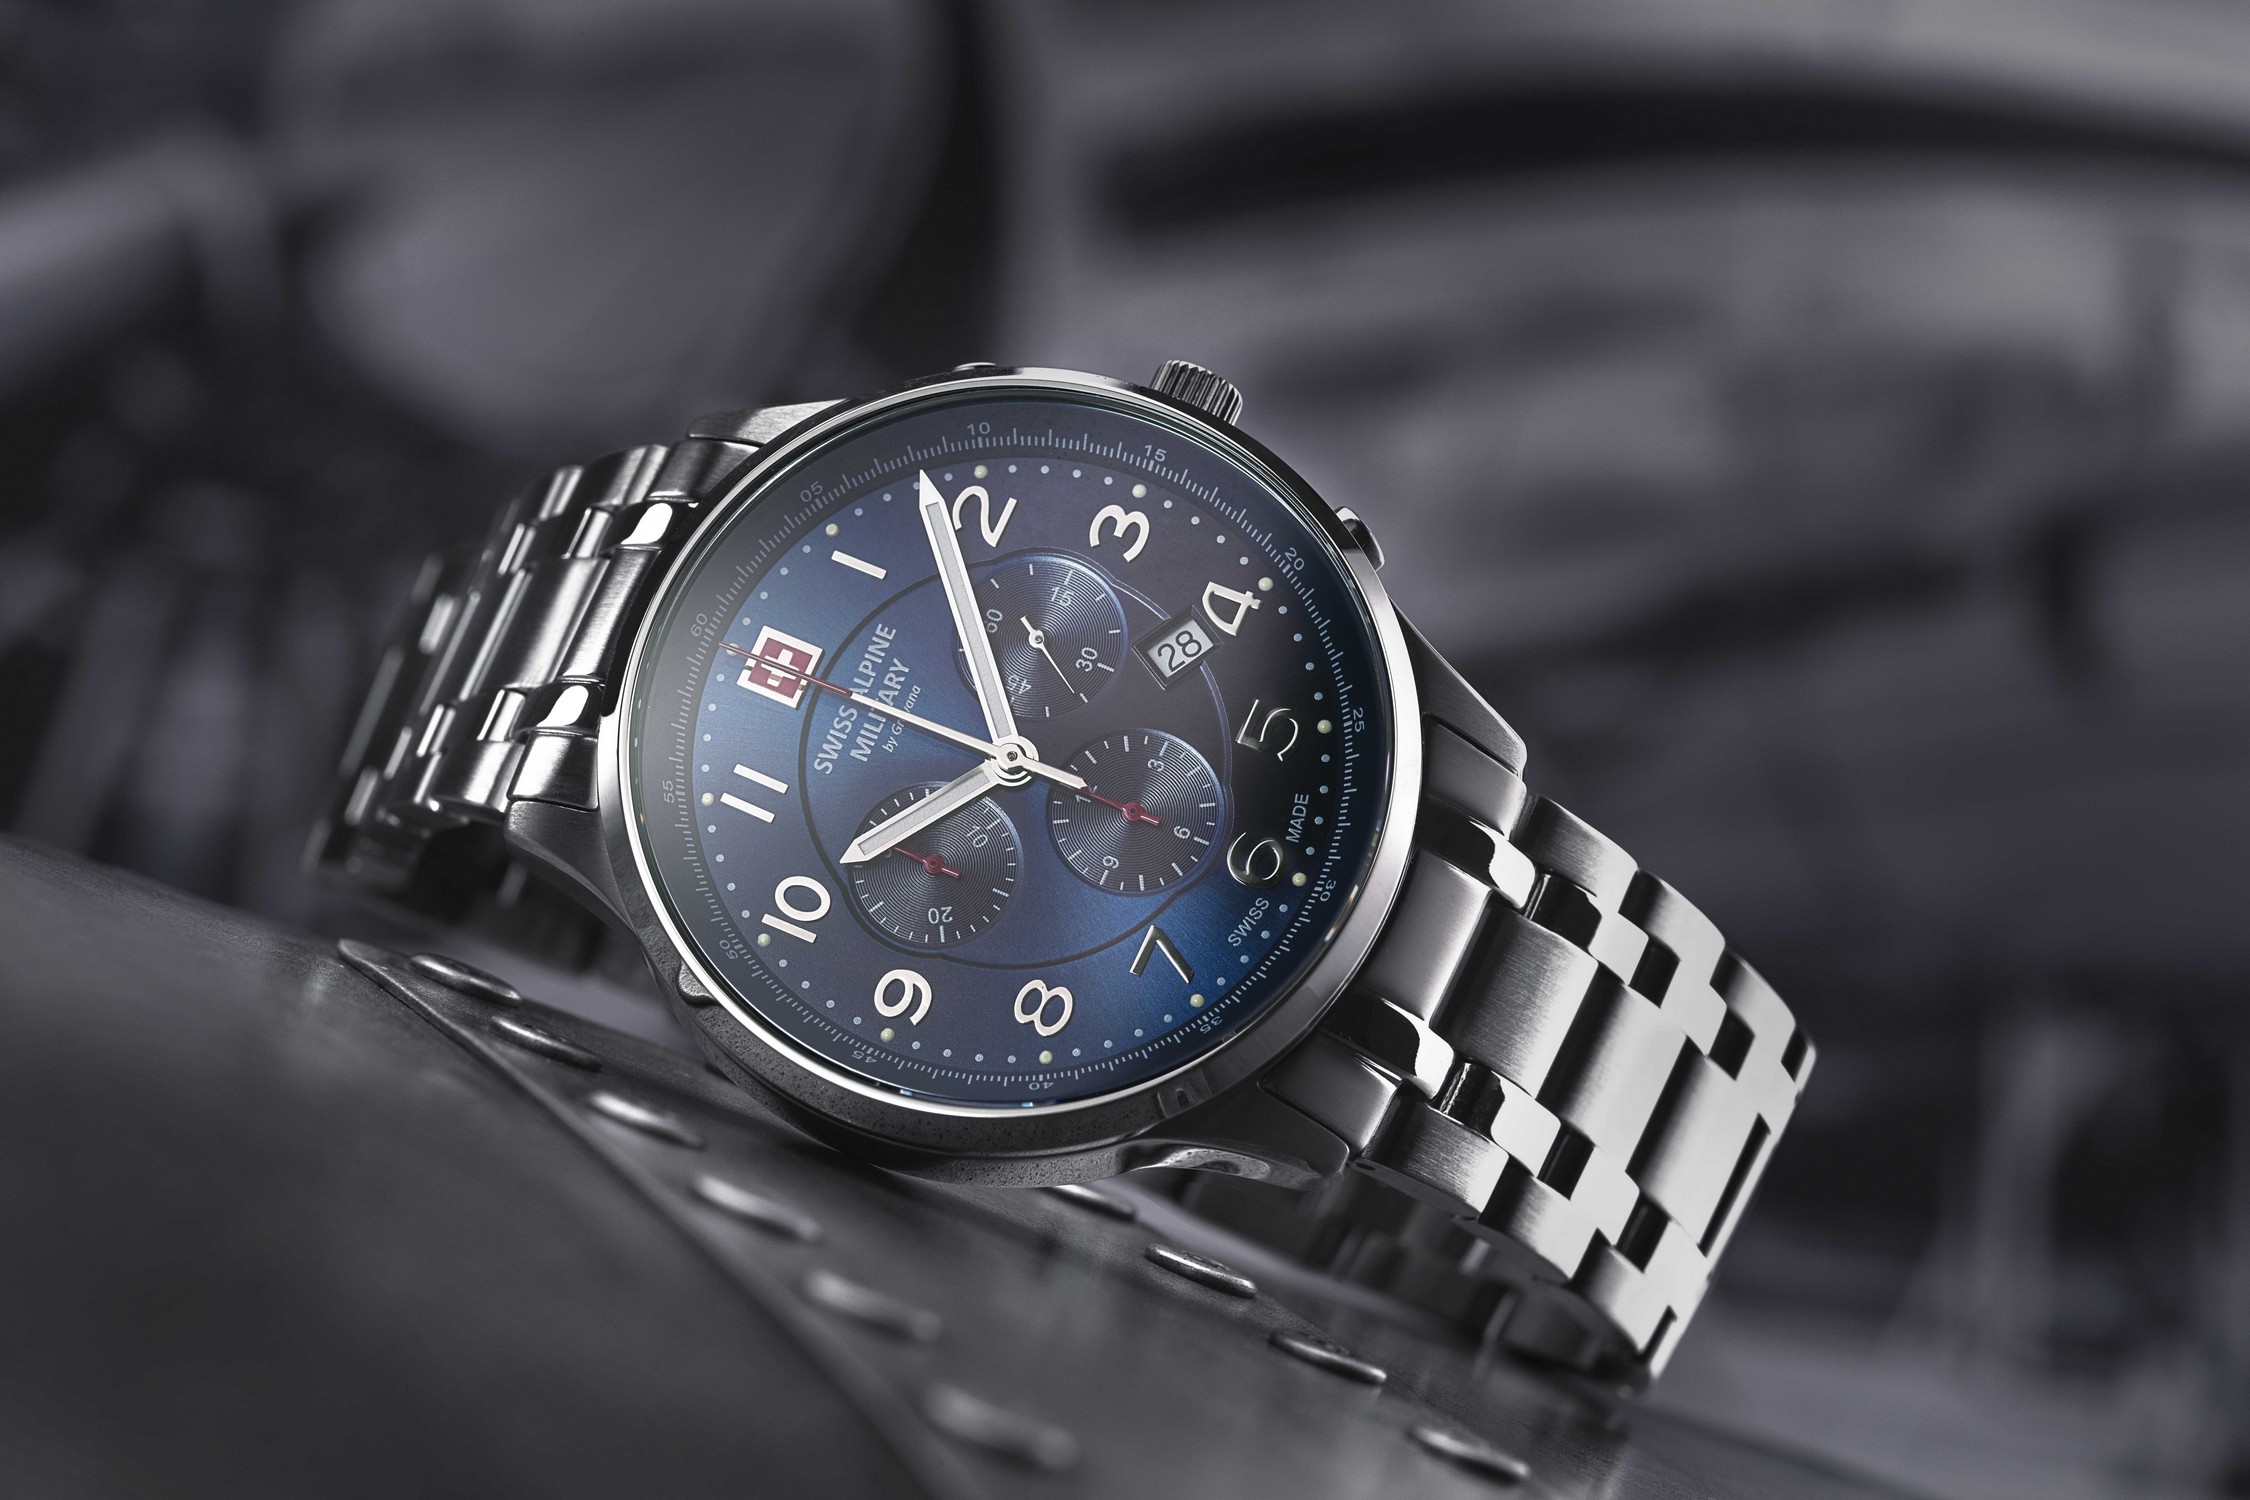 SWISS ALPINE MILITARY  Мужские швейцарские часы, кварцевый механизм, сталь, 43 мм